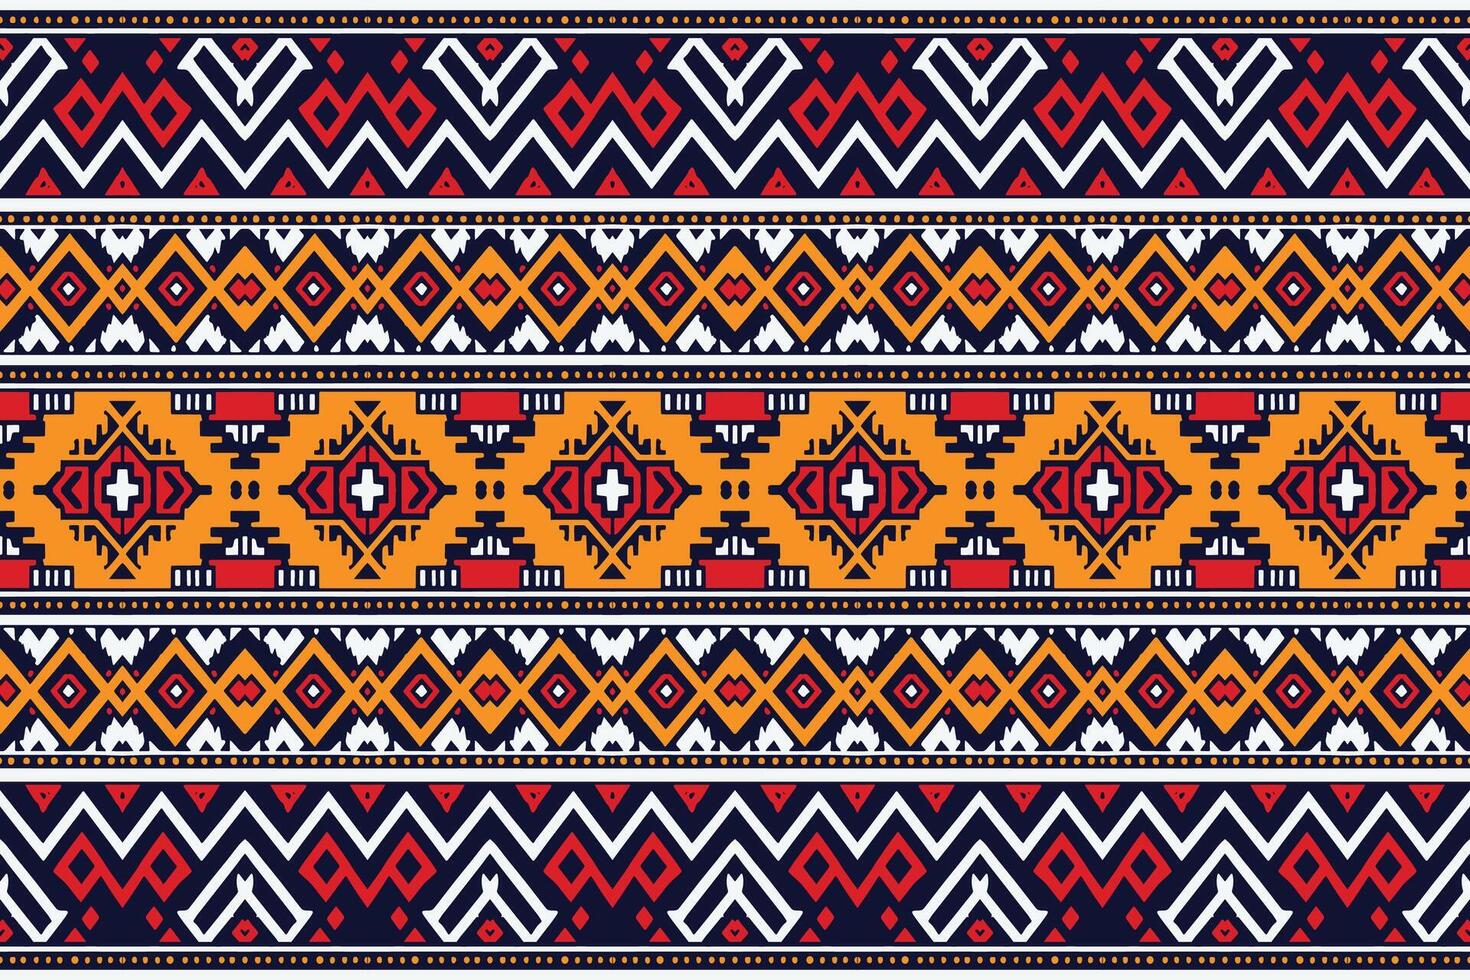 geometrisch ethnisch Blume Muster zum Hintergrund, Stoff, Verpackung, Kleidung, Tapete, Batik, Teppich, Stickerei Stil vektor